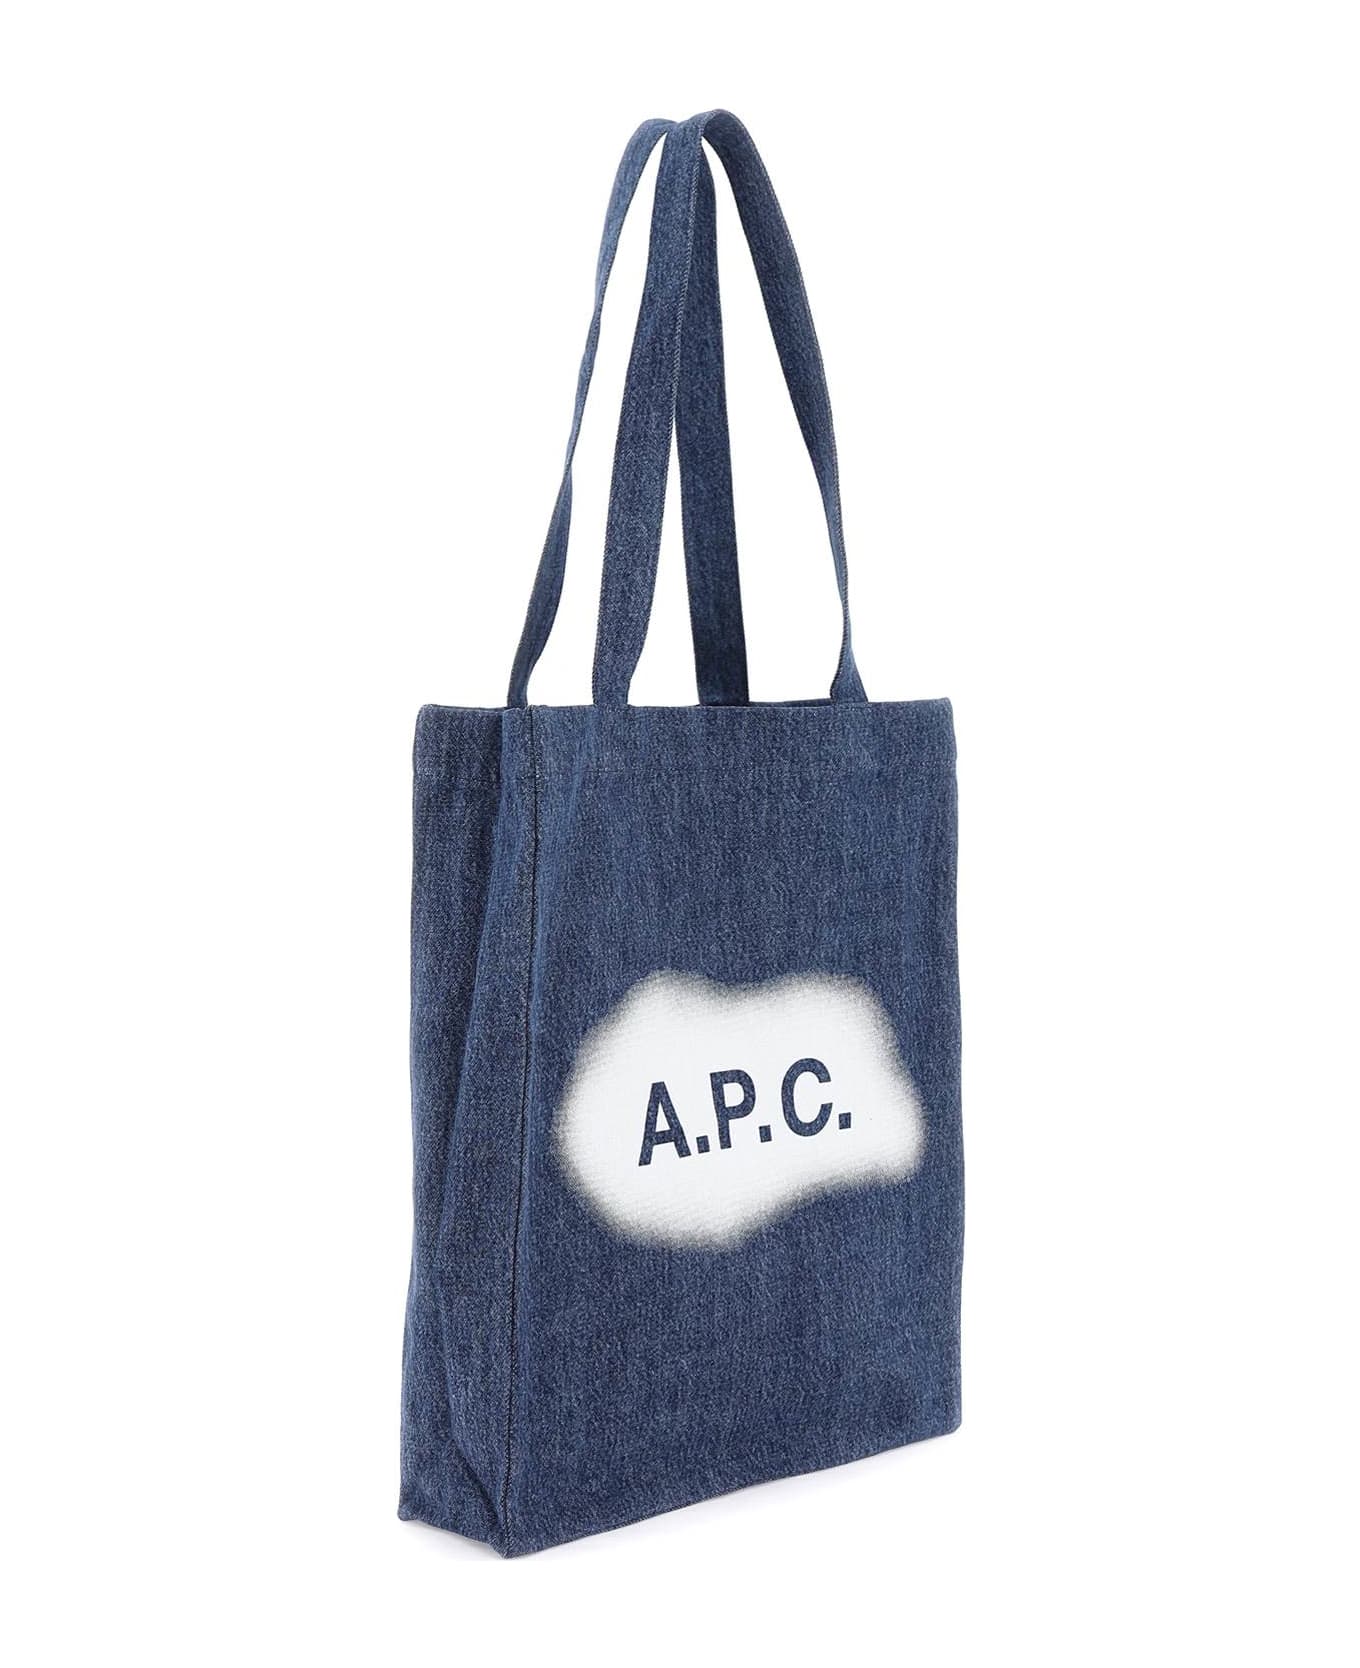 A.P.C. Lou Shopping Bag - Washed indigo